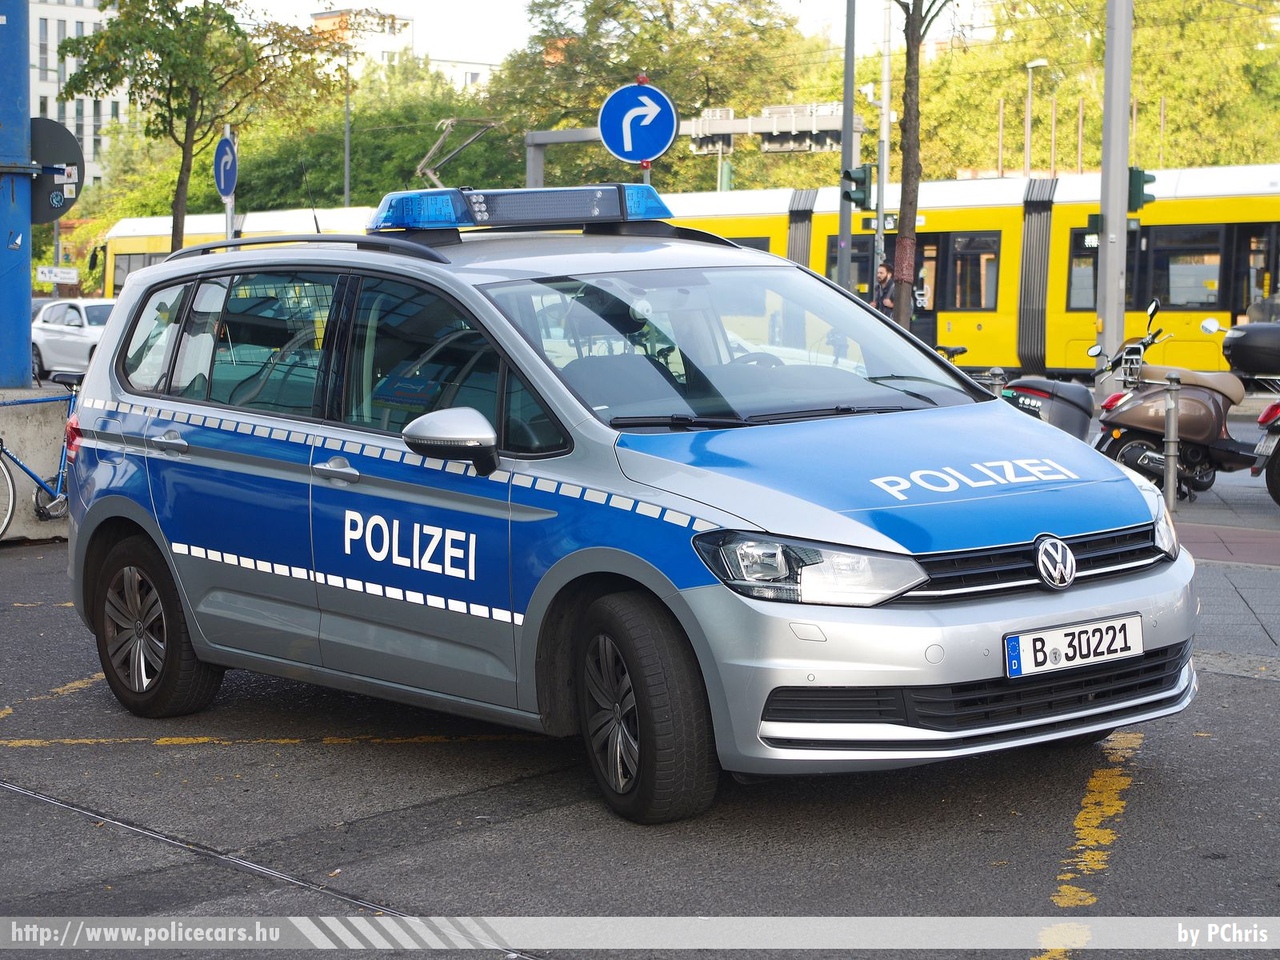 Volkswagen Touran, fotó: PChris
Keywords: német Németország rendőr rendőrautó rendőrség german Germany police policecar